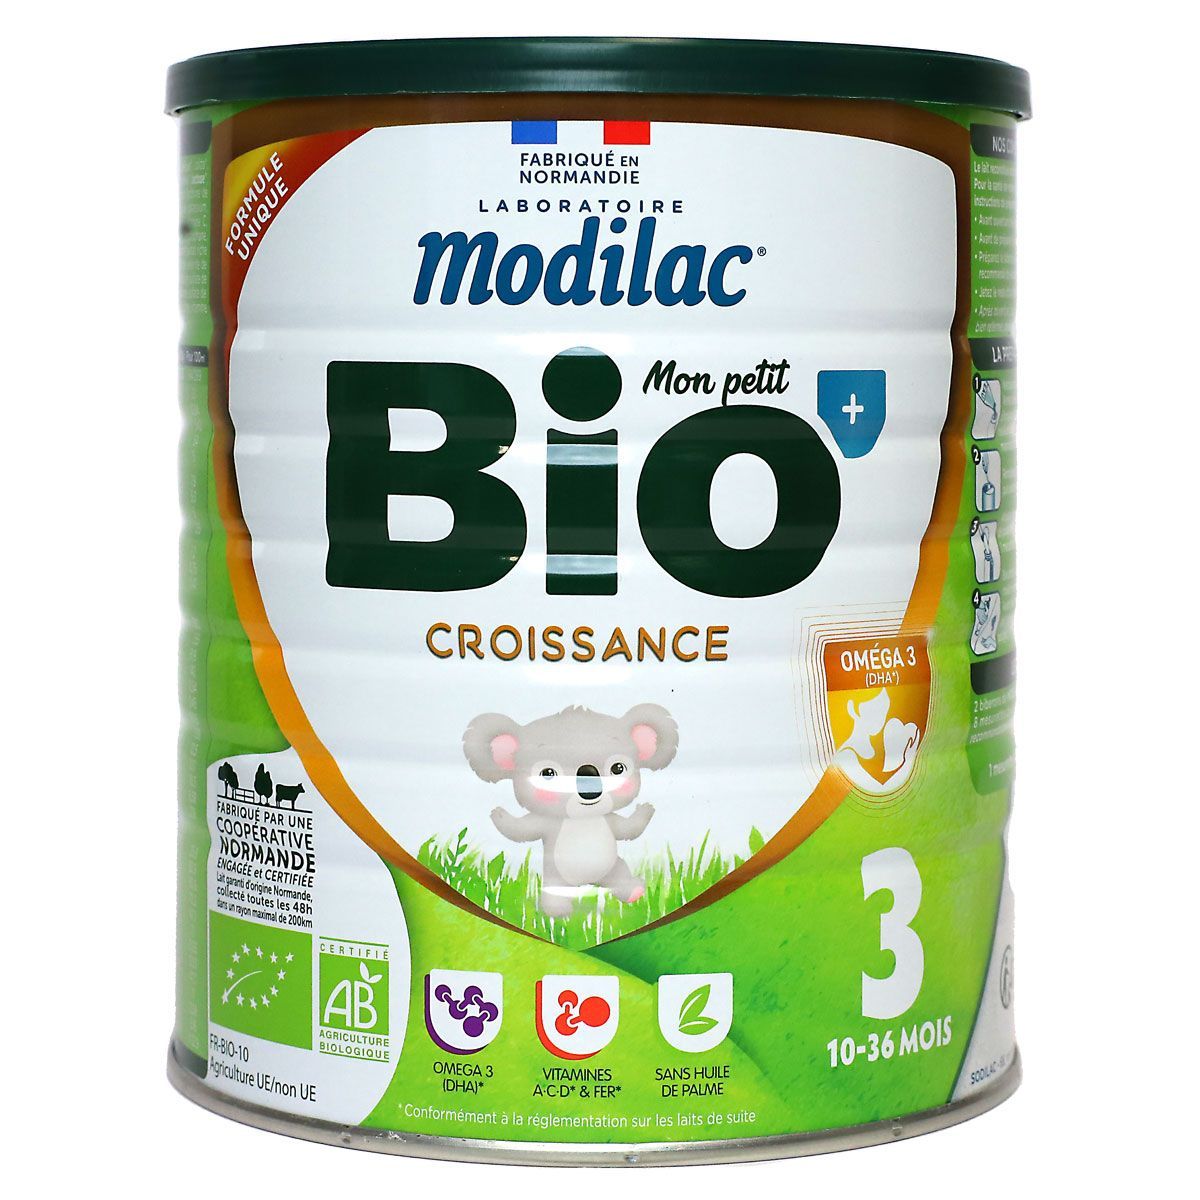 Le lait Modilac Bio Croissance est un lait pour les enfants